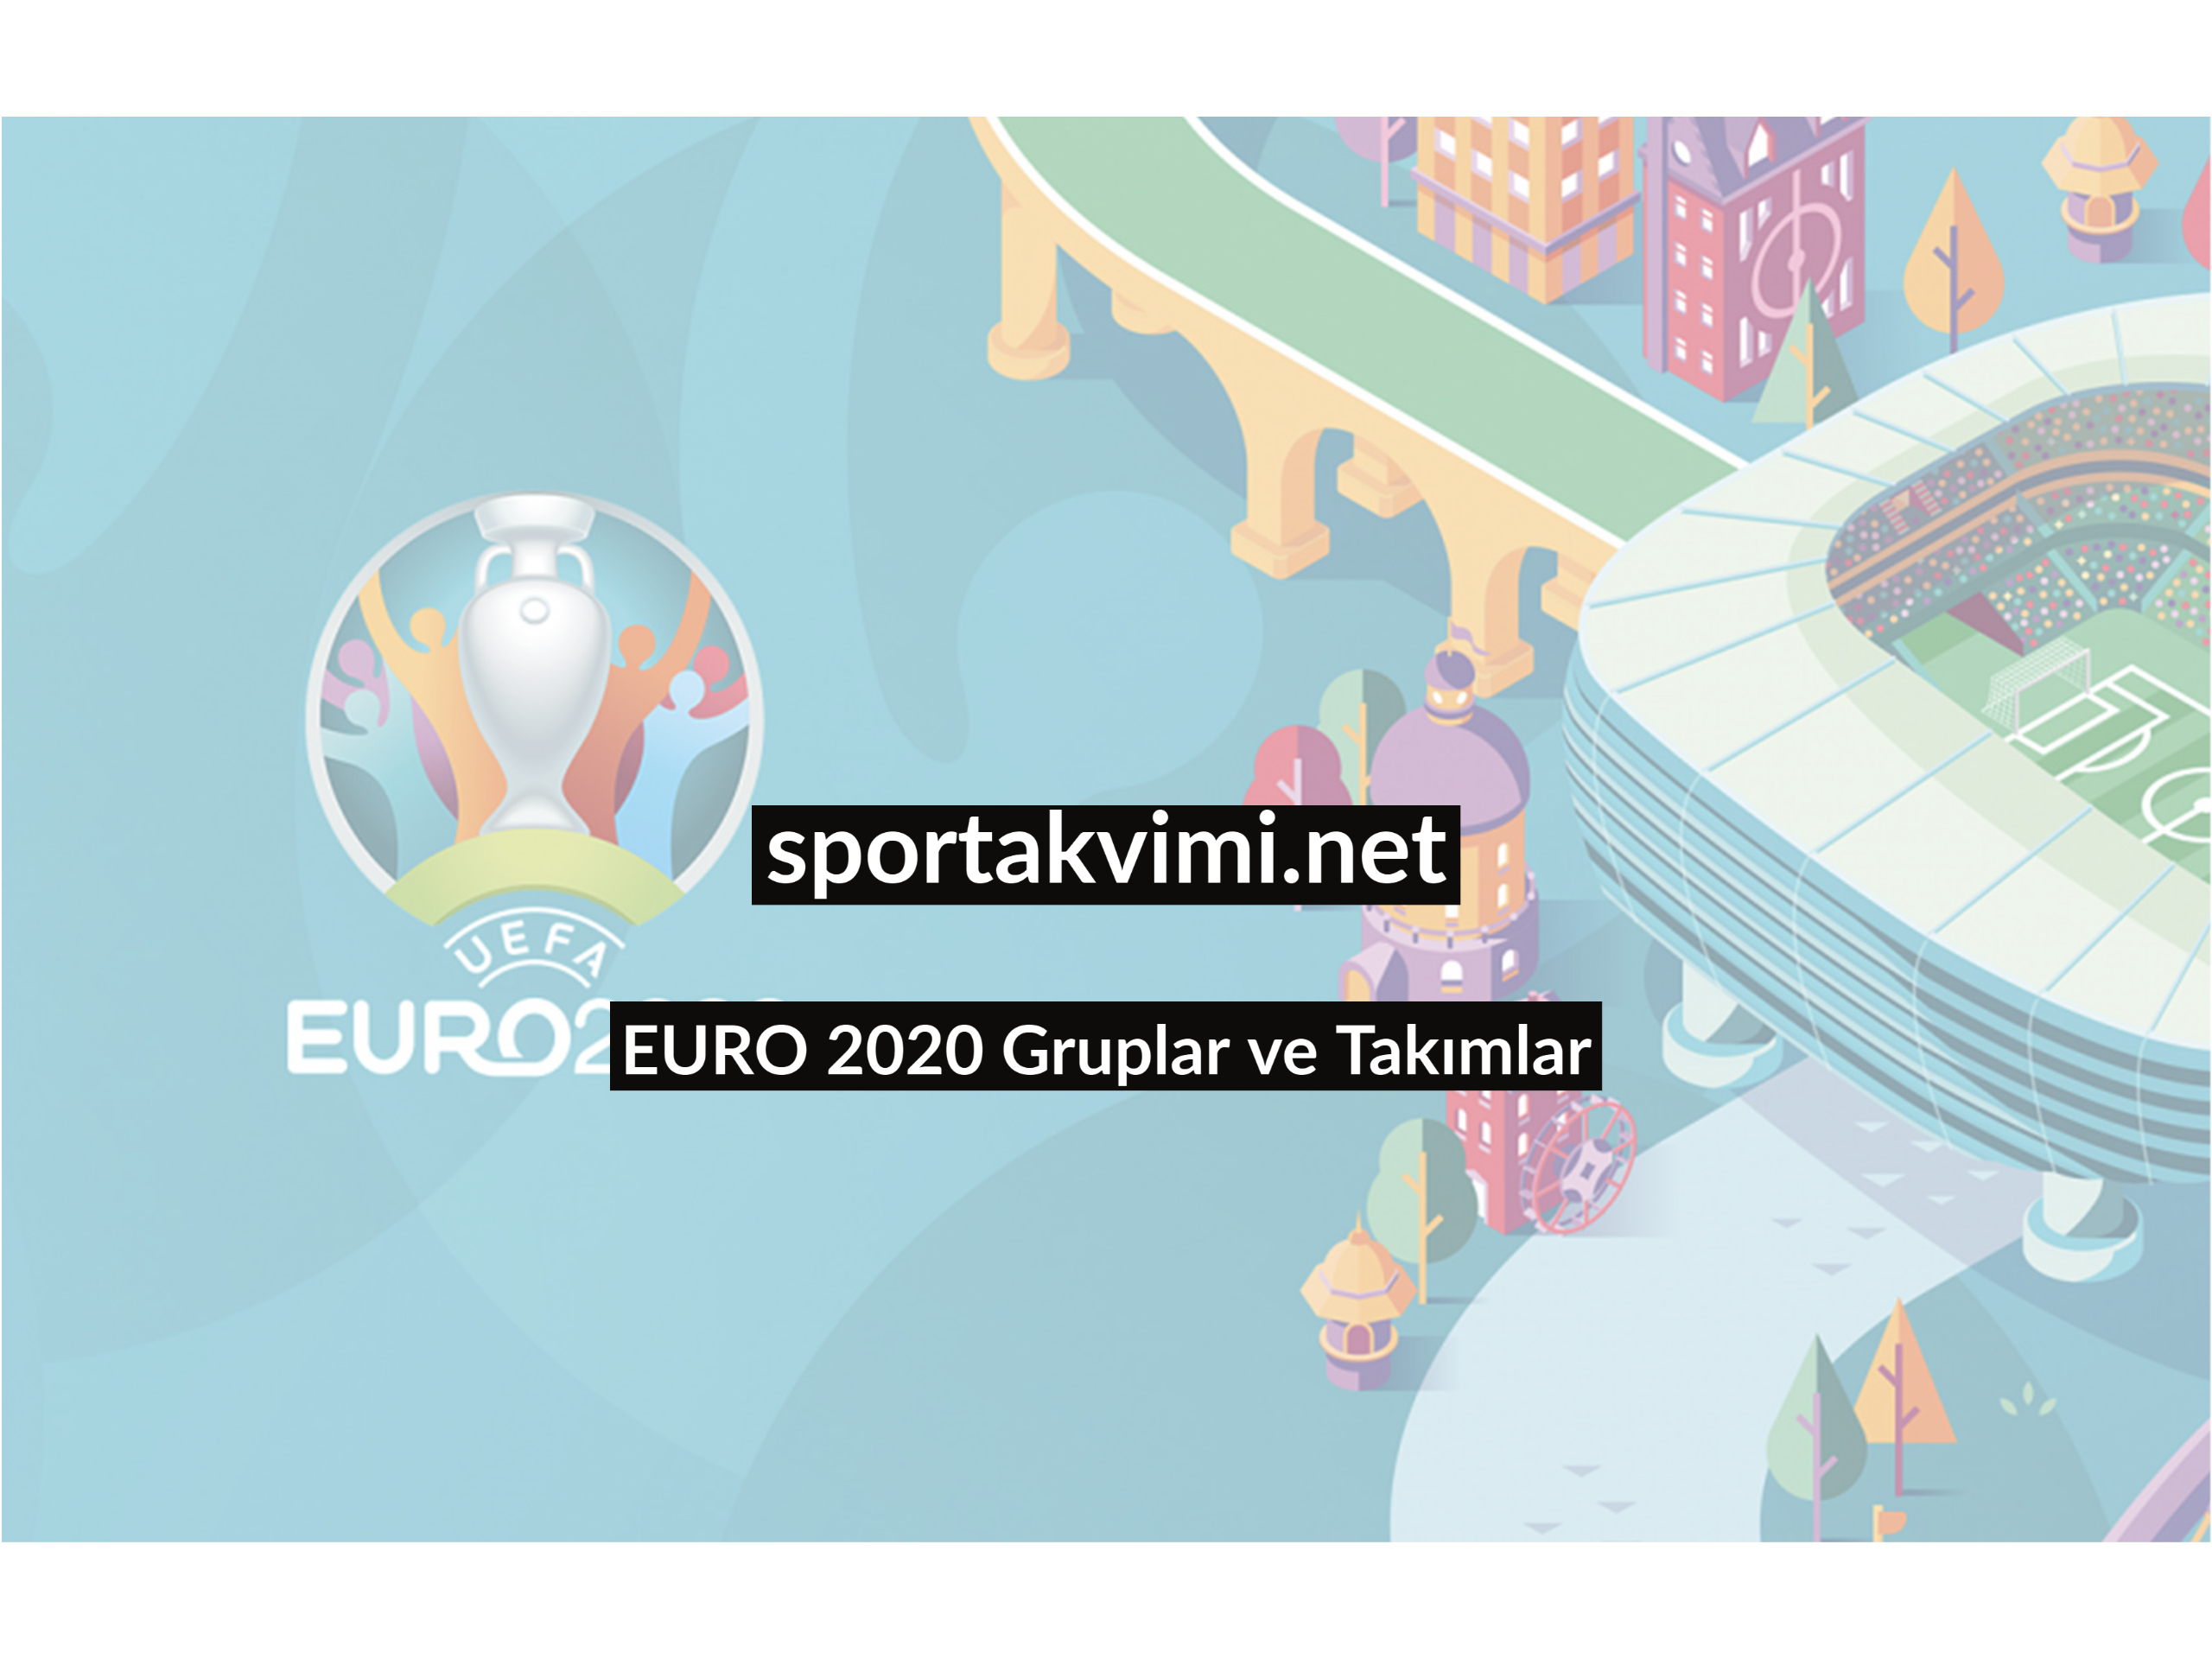 euro 2020 gruplar ve takimlar spor takvimi